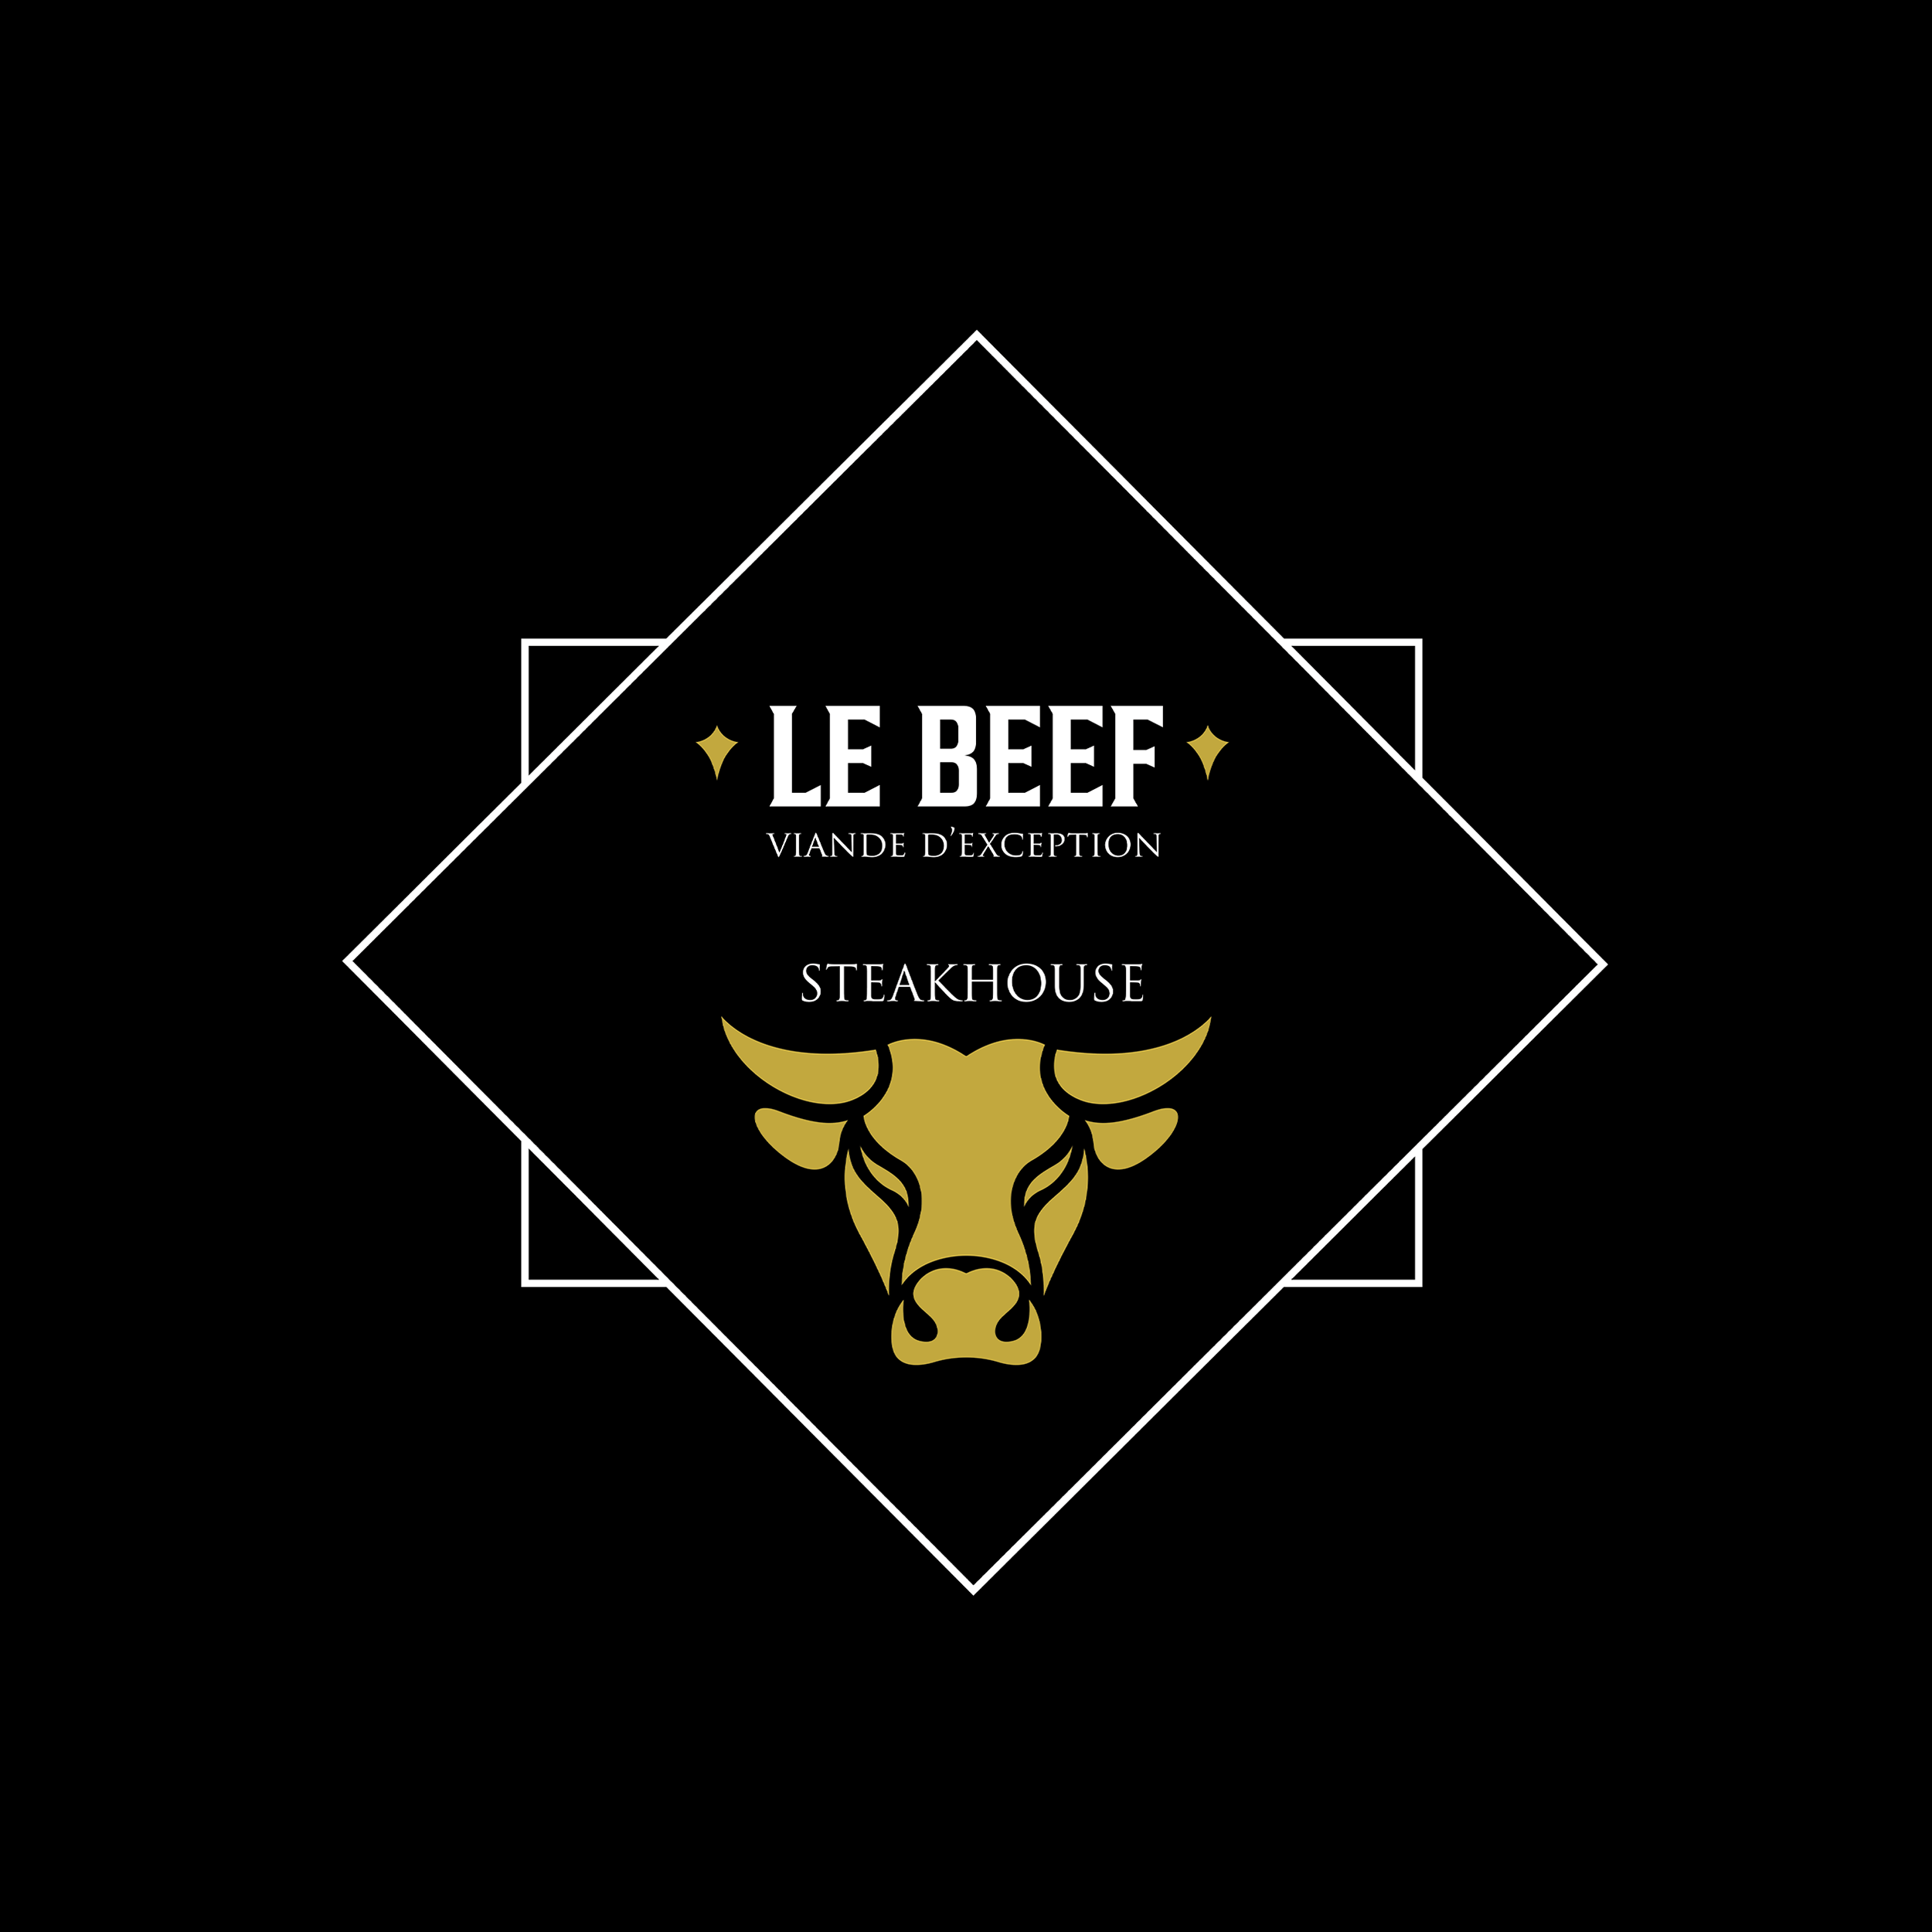 Le Beef Steakhouse Paradis est-il le meilleur steakhouse restaurant de viande à Paris 10 ?